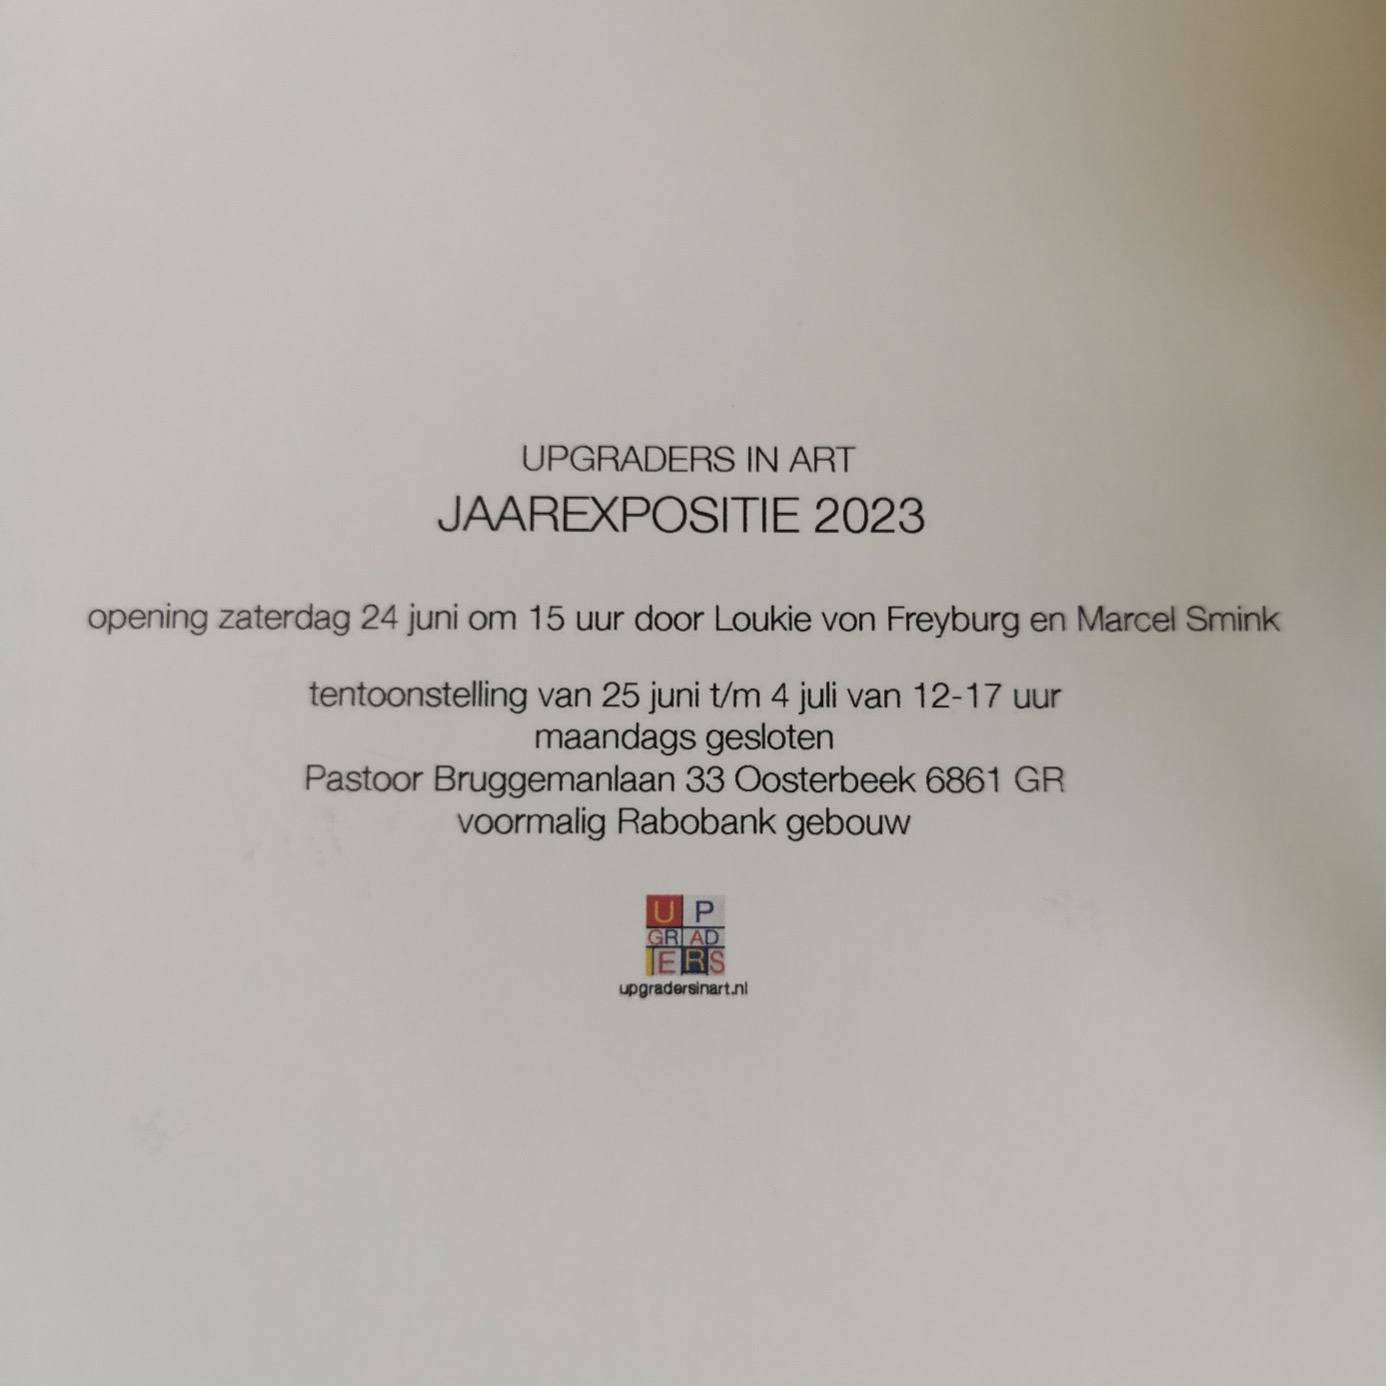 uitnodiging expositie upgraders in art 2023